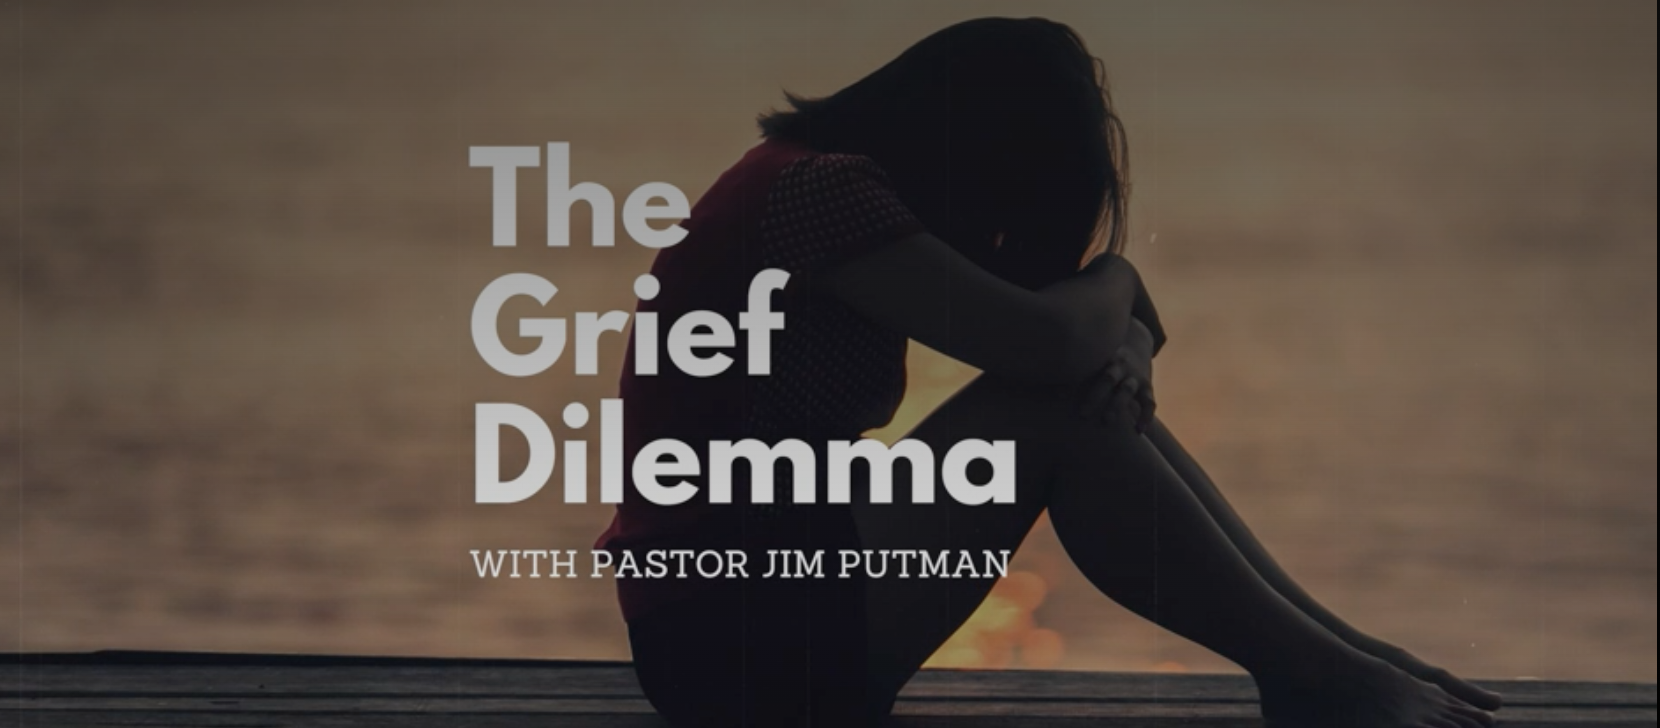 The Grief Dilemma